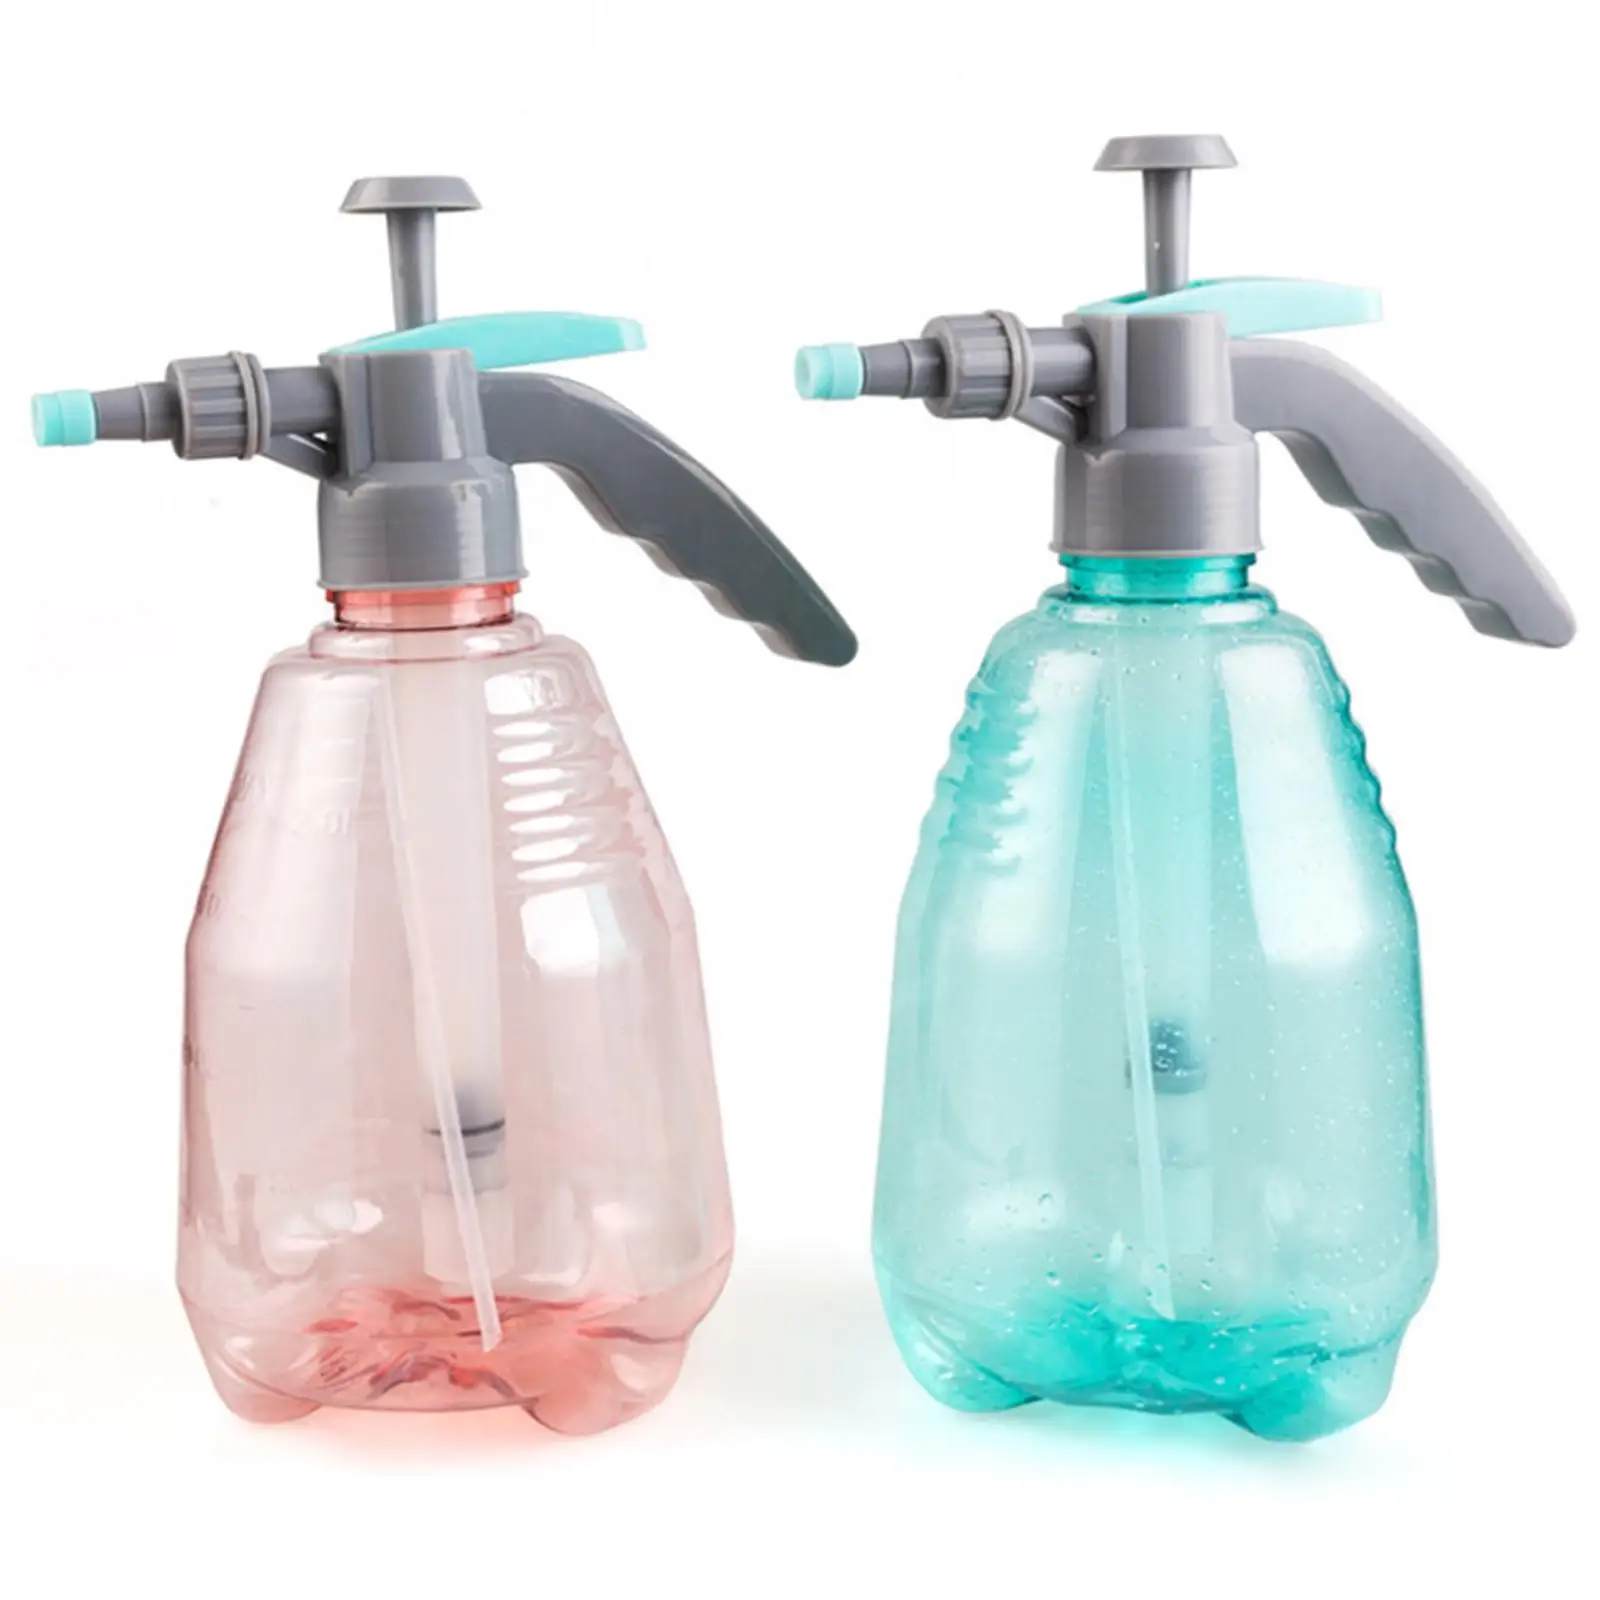 Garden Pump Sprayer Spray Bottle Water Bottle Lightweight 1.5L for Pets Indoor Plants Car Washing Gardening Home Cleaning